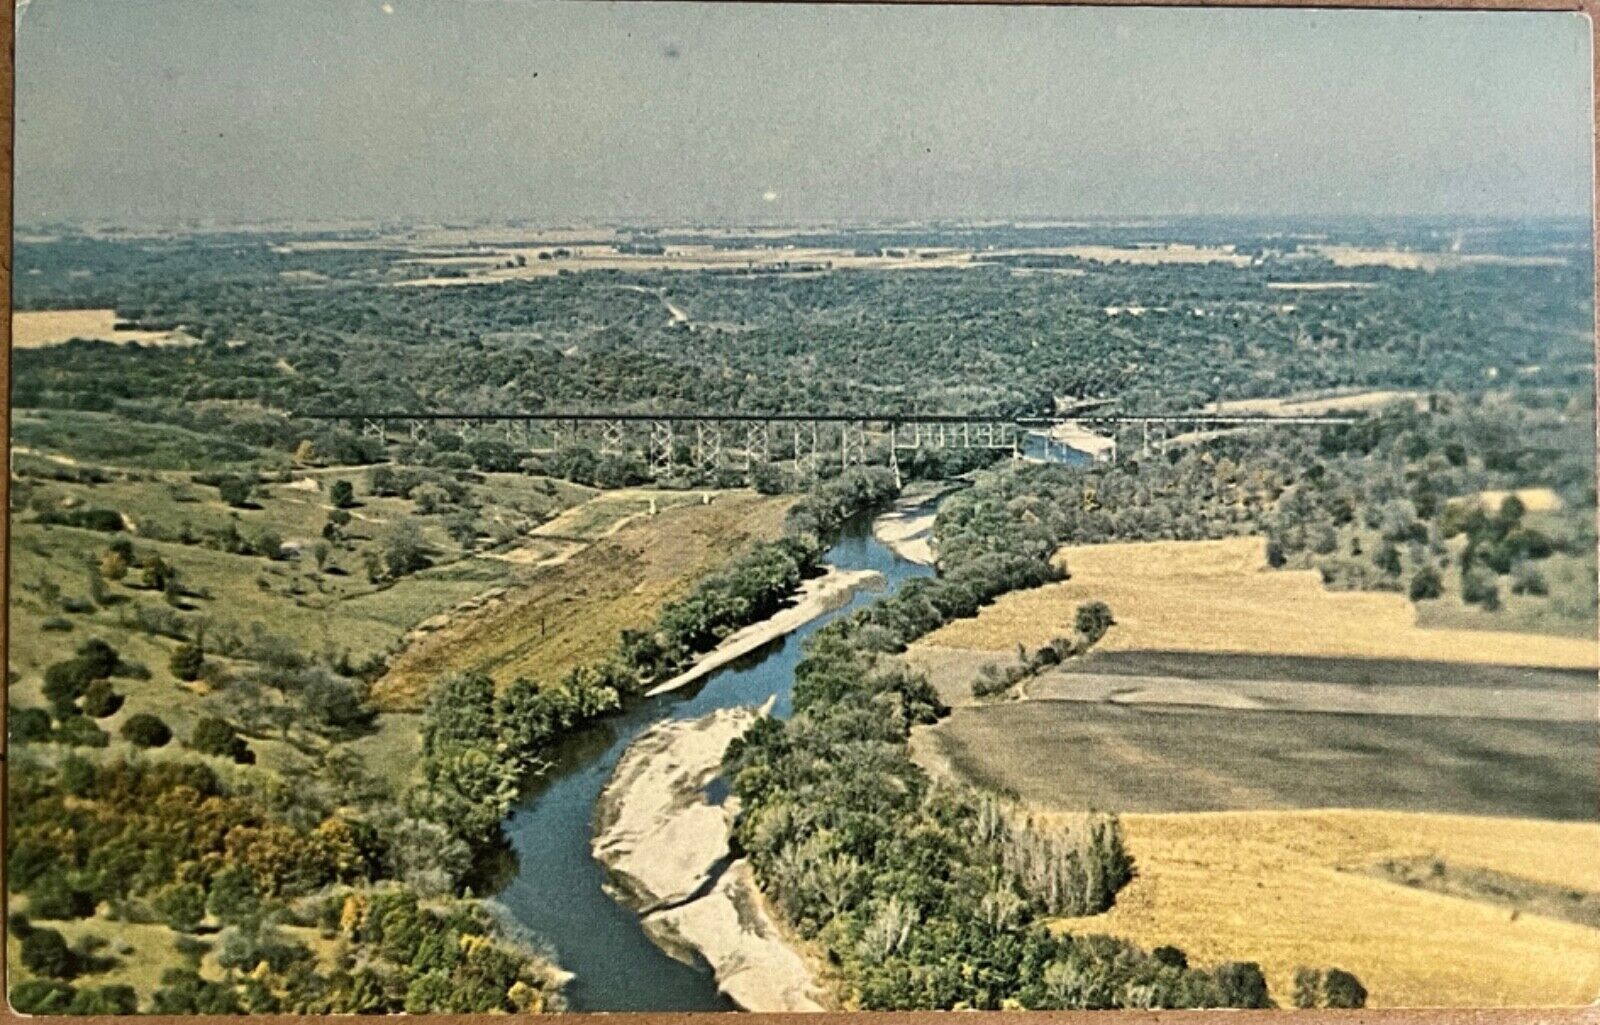 Boone Iowa Kate Shelley High Bridge Railway Aerial View Postcard c1950